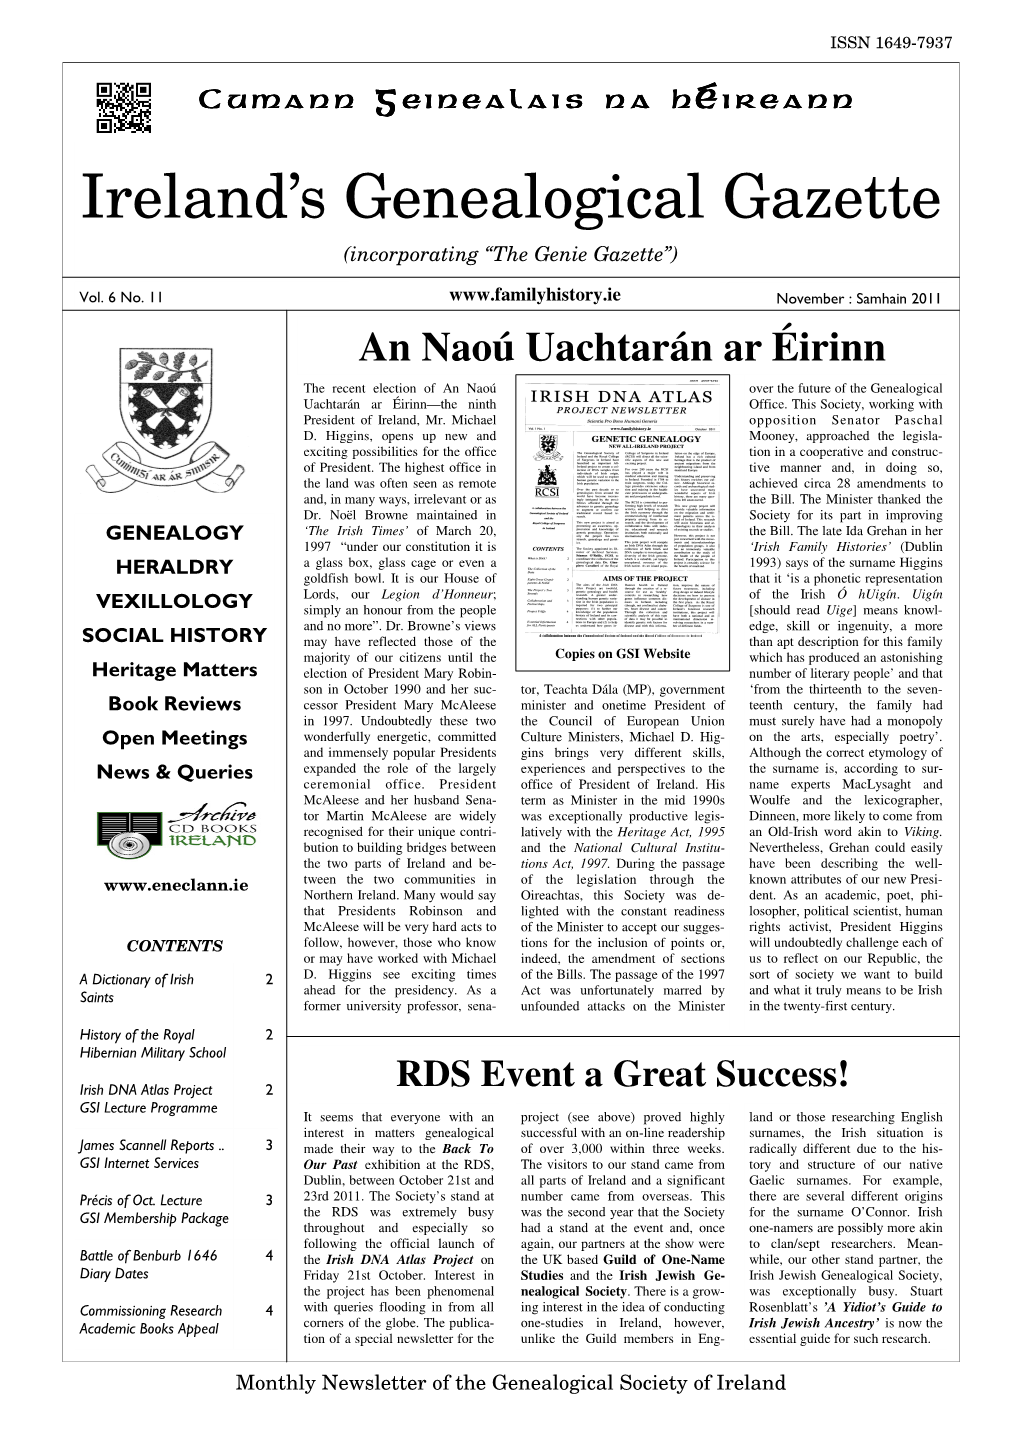 Ireland's Genealogical Gazette (Nov. 2011)